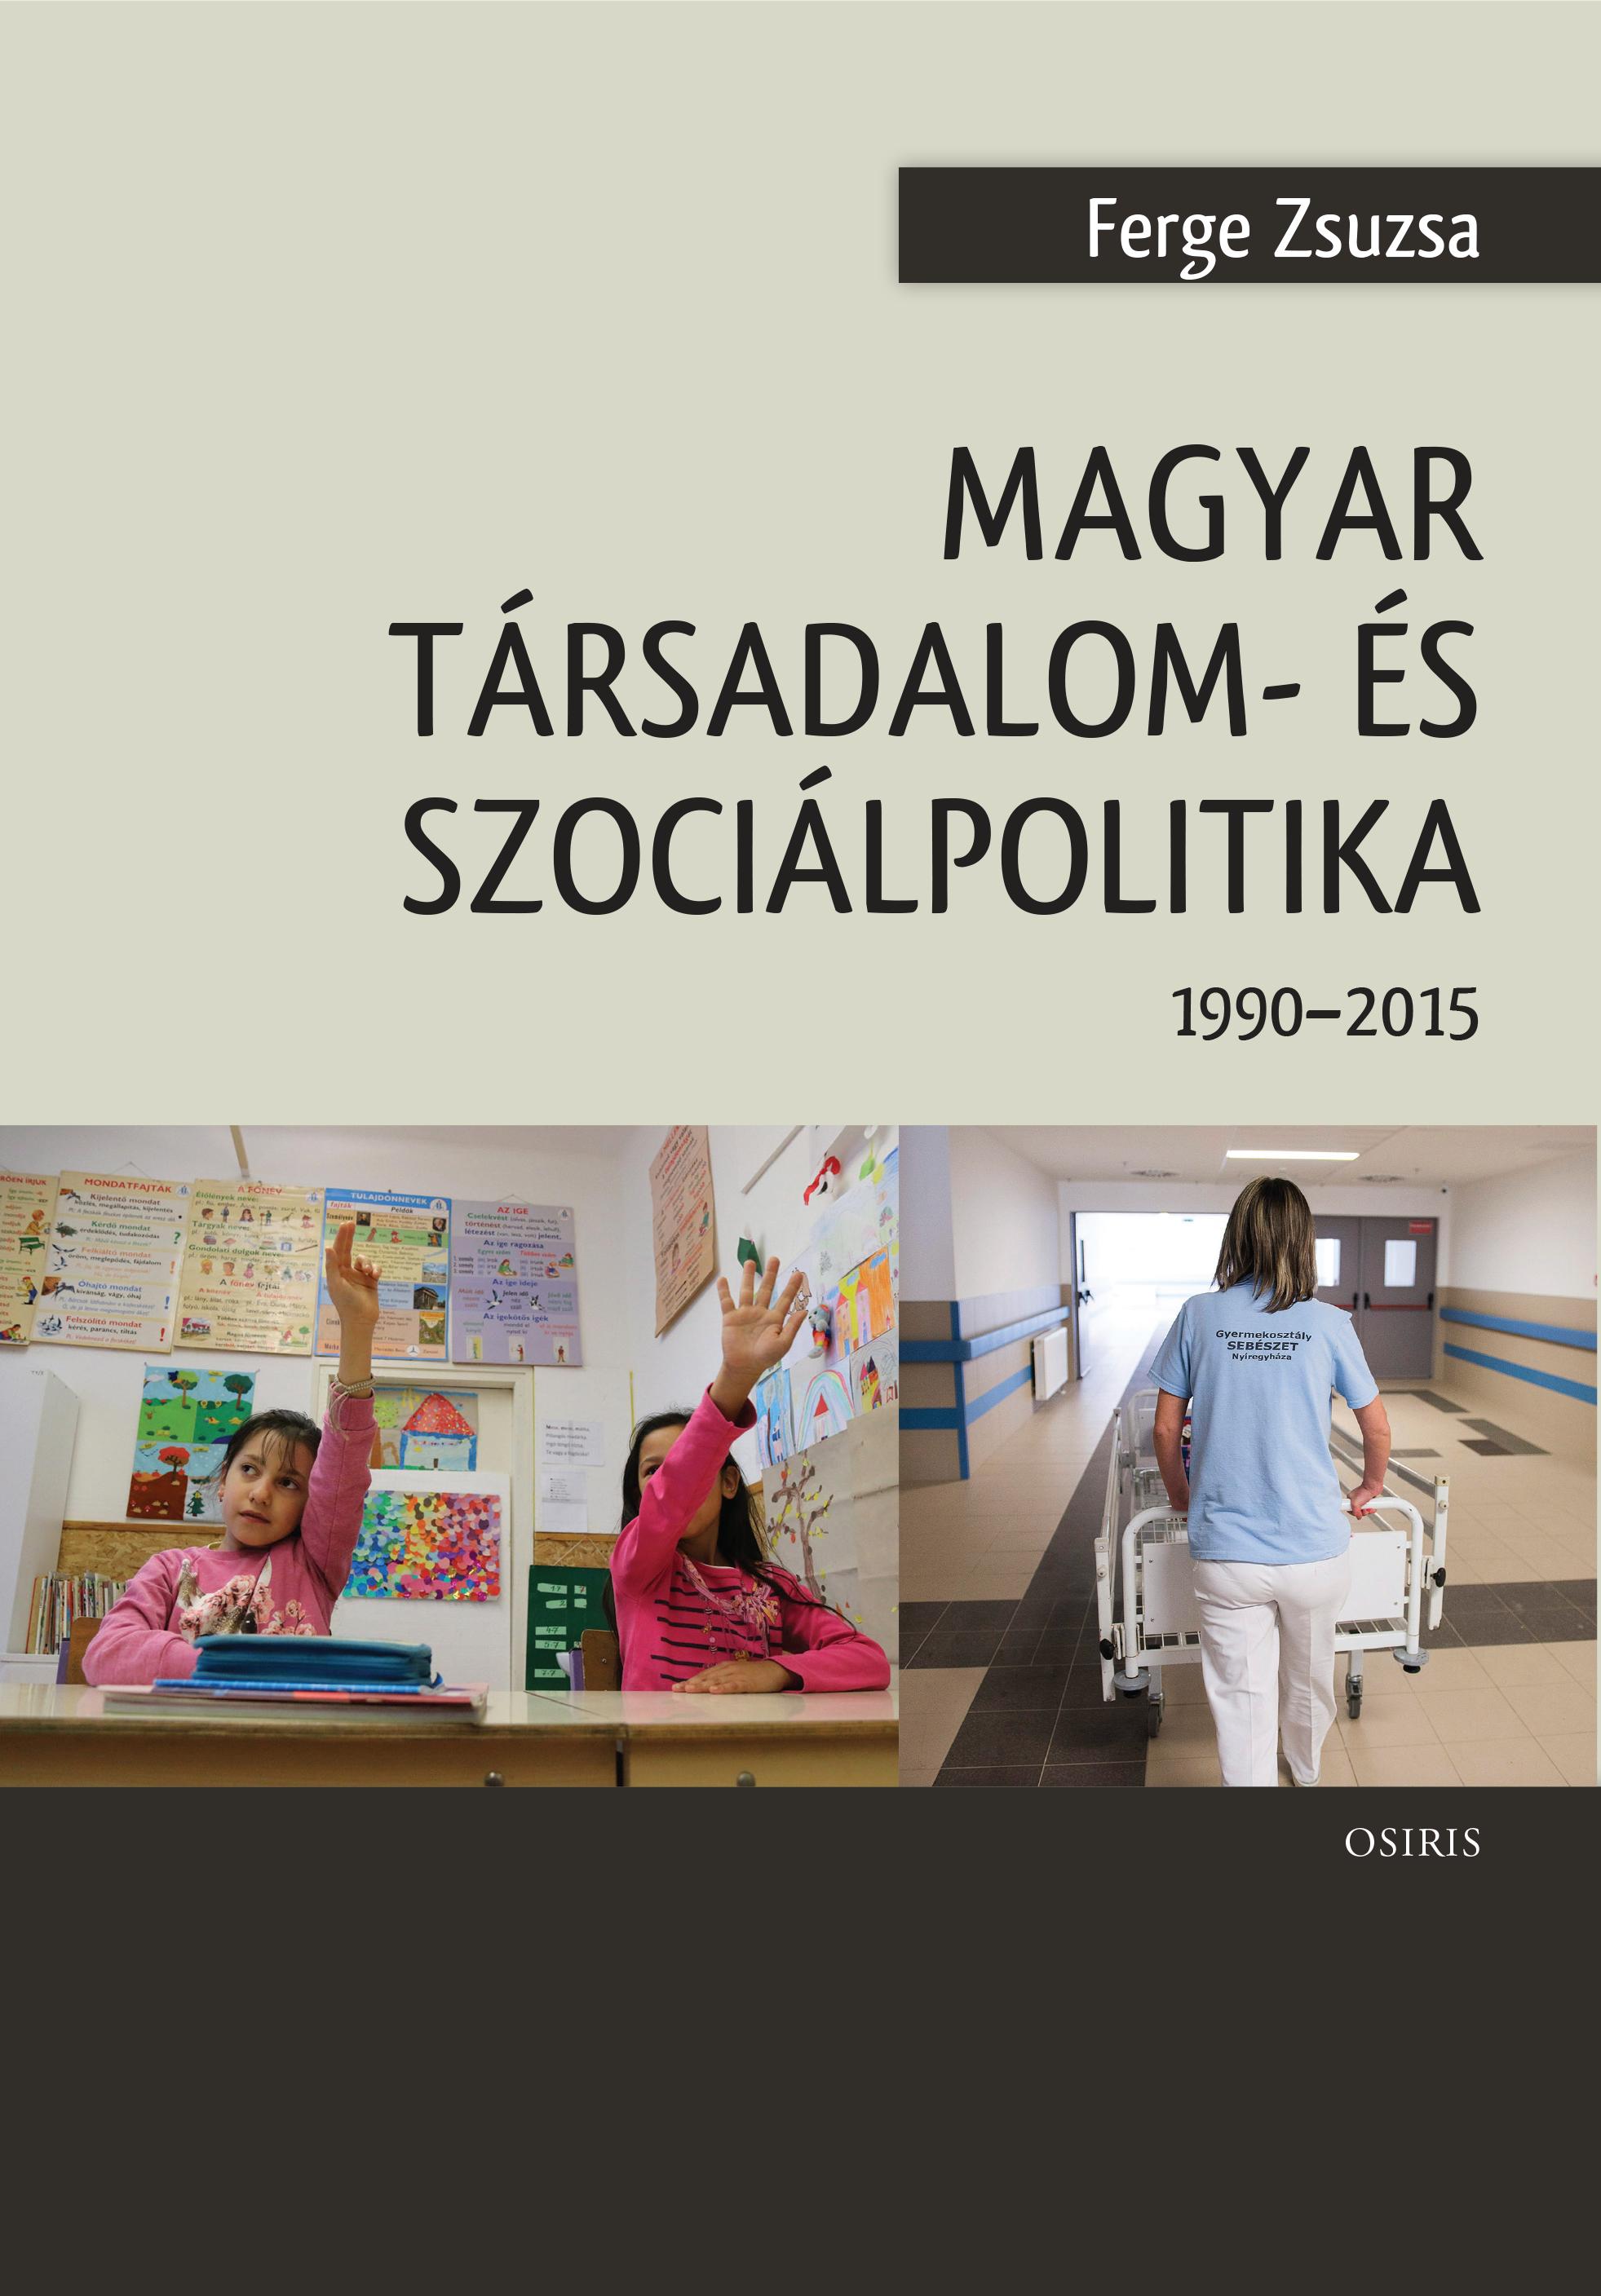 Ferge Zsuzsa - Magyar társadalom- és szociálpolitika (1990- 2015)